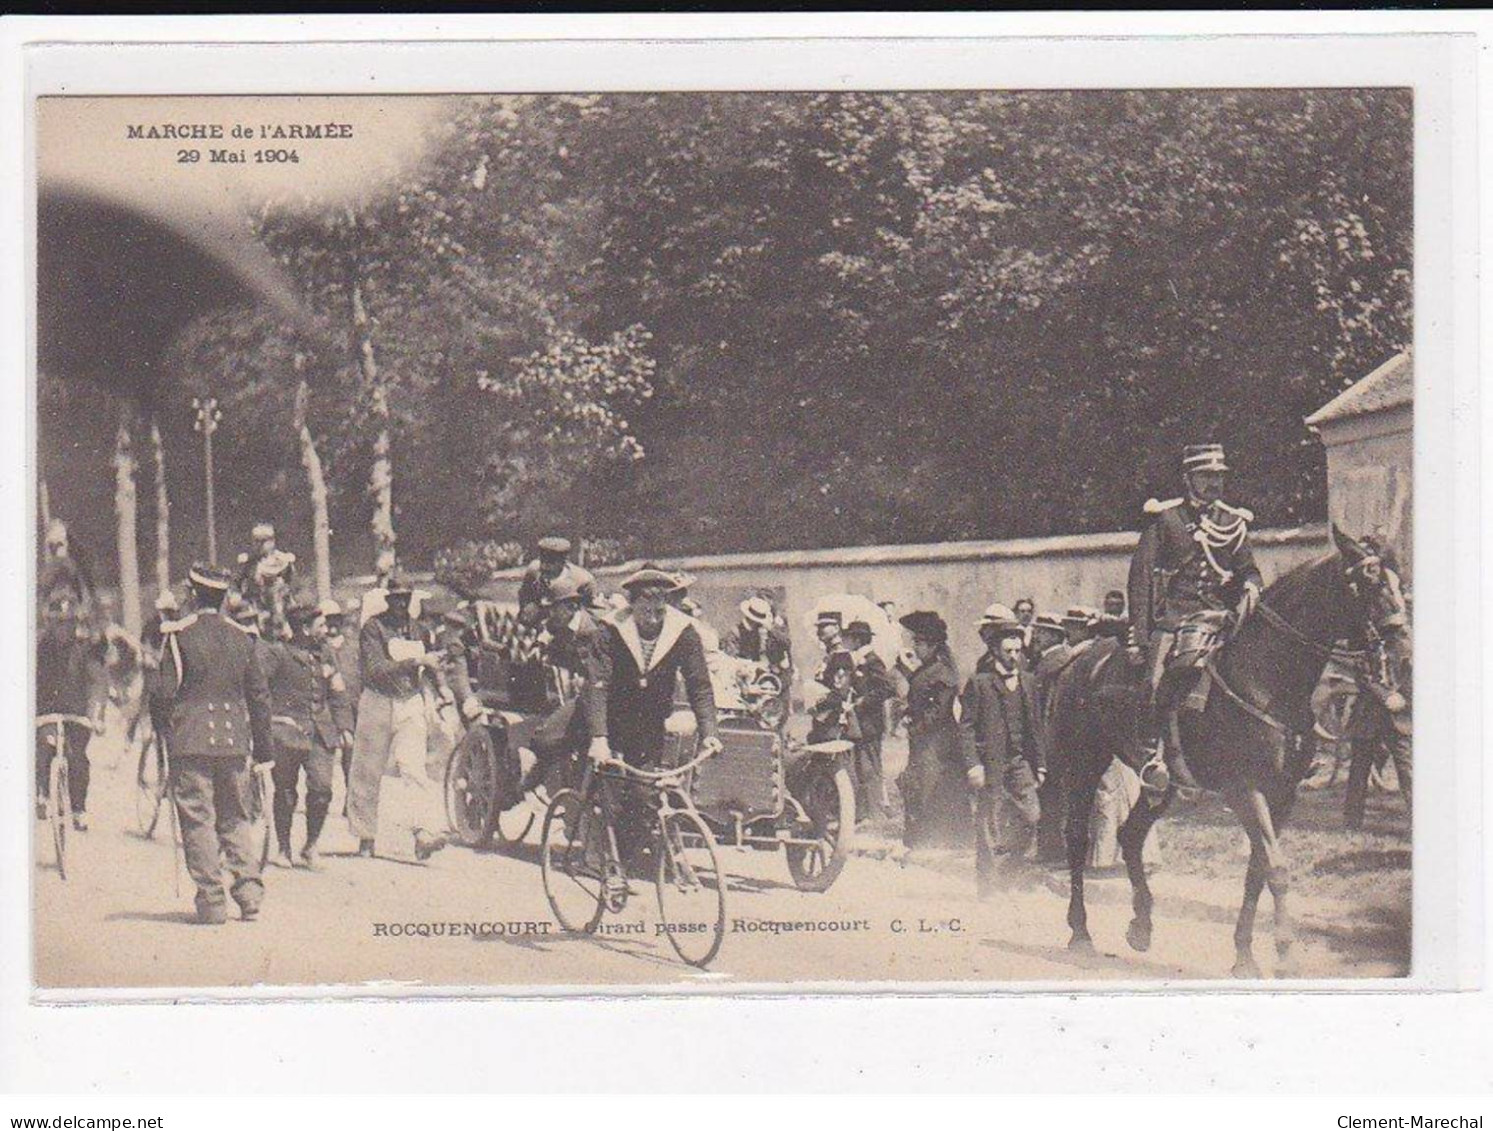 ROCQUENCOURT : Girard Passe à Rocquencourt, Marche De L'Armée, 29 Mai 1904 - Très Bon état - Rocquencourt